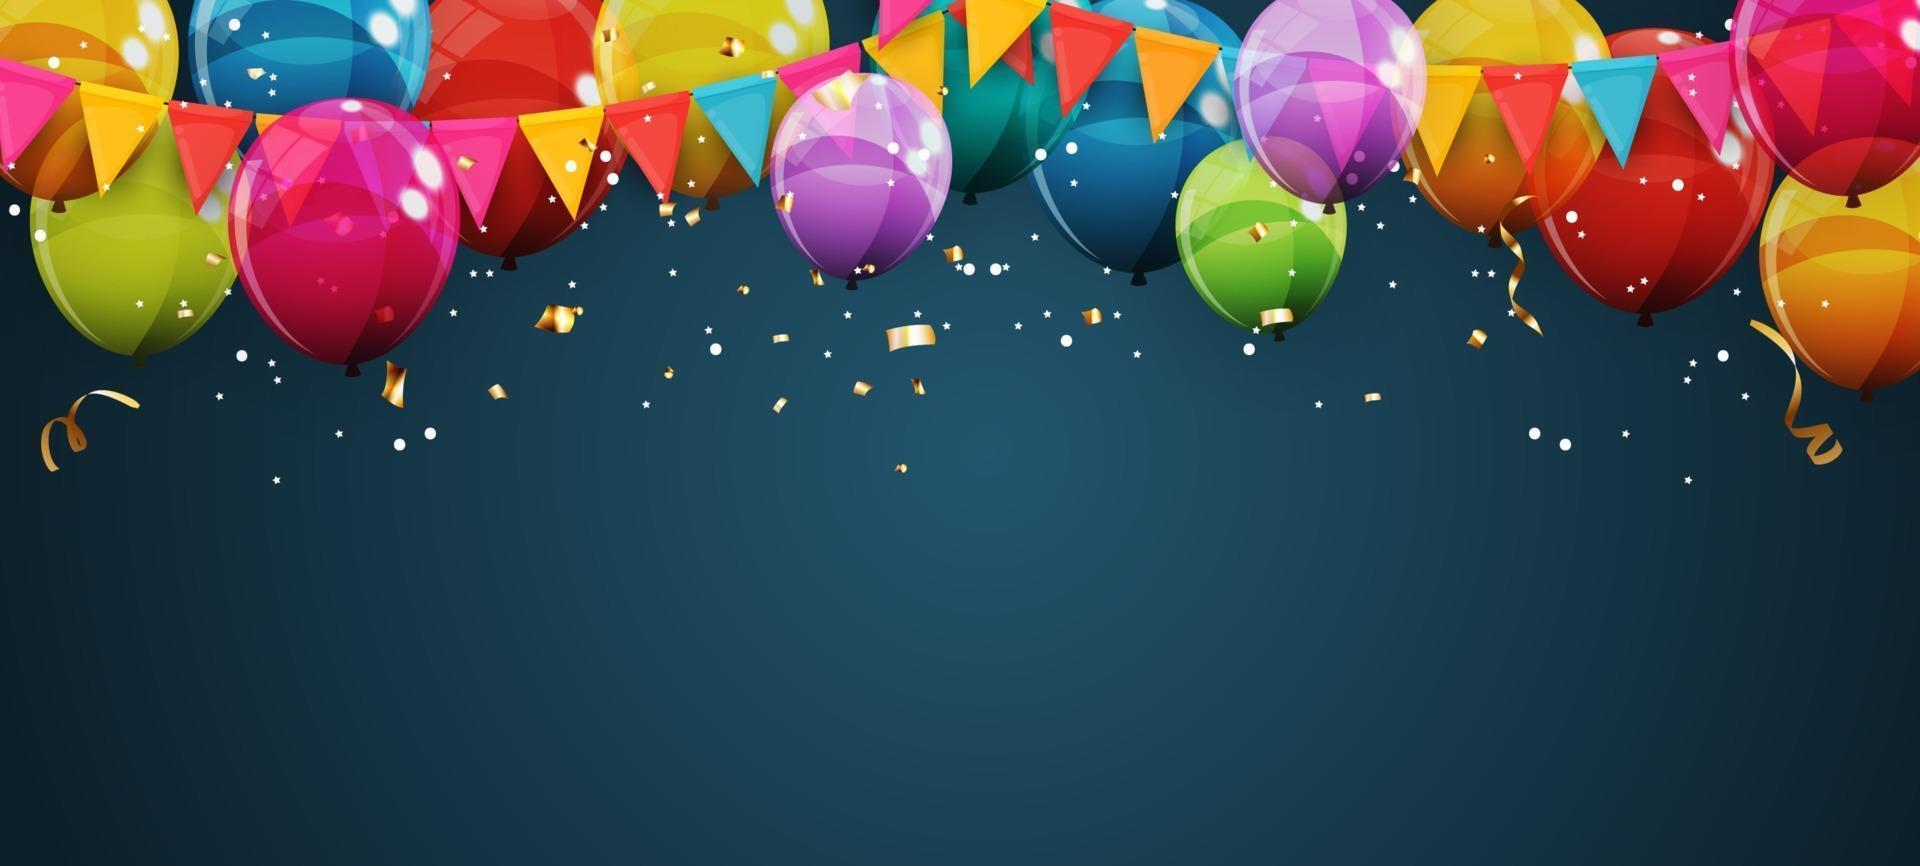 abstrakt semester bakgrund med ballonger för reklam reklam och födelsedagskort eller inbjudan vektor